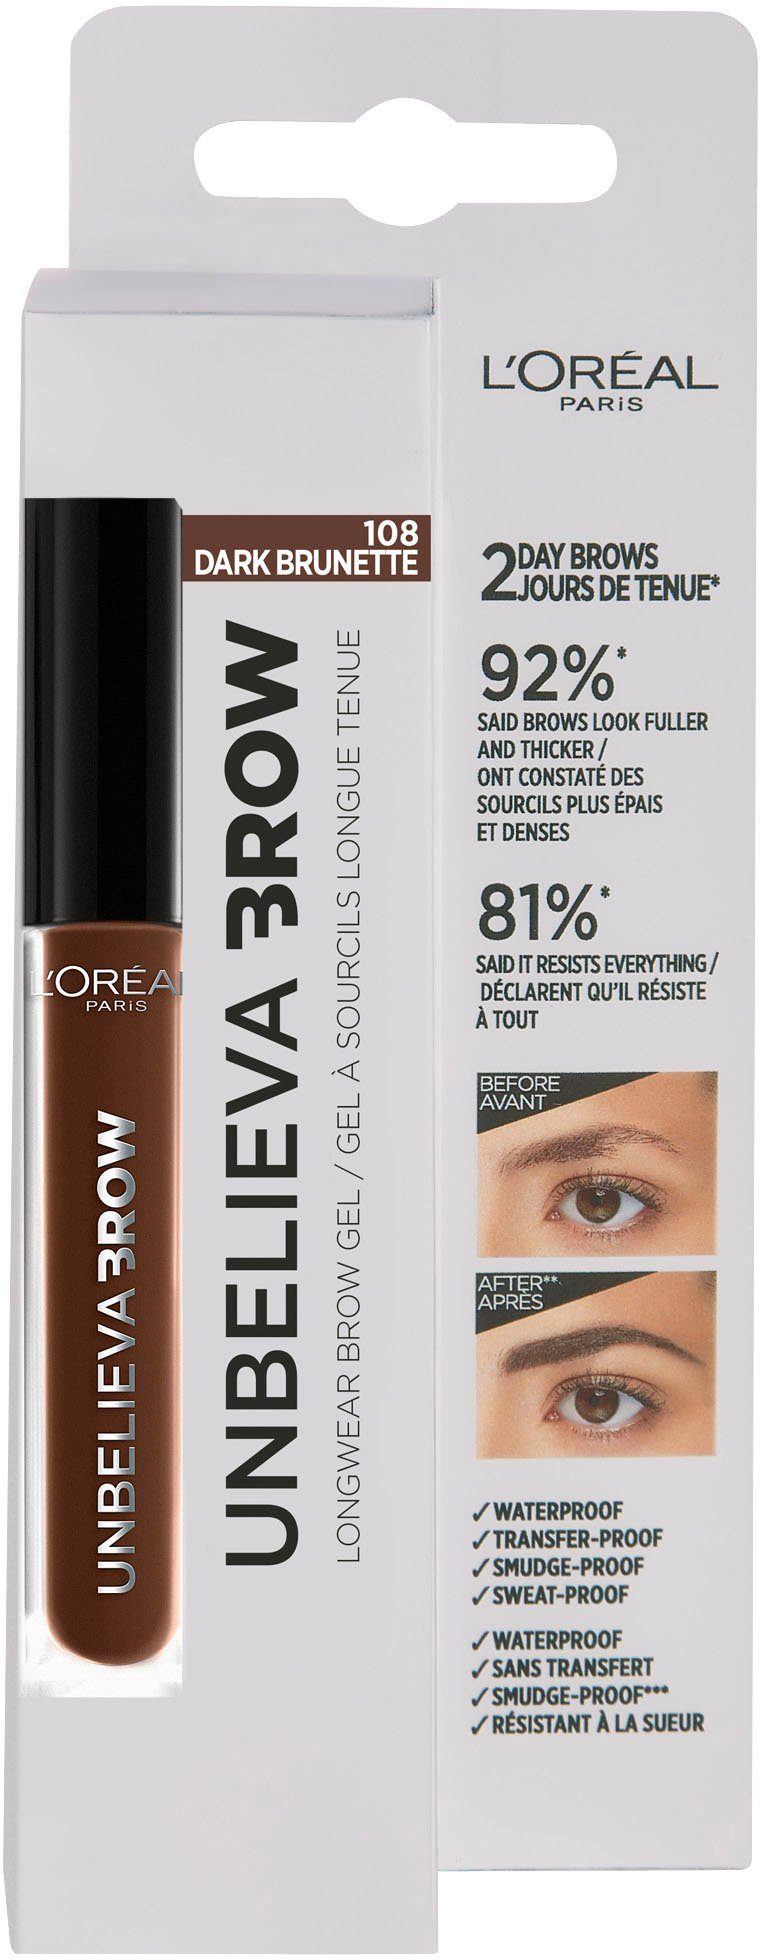 Unbelieva L'ORÉAL mit Augen-Make-Up Augenbrauen-Gel 3.0 unterschiedlichen Brow, Brunette PARIS Applikatoren, wischfest,